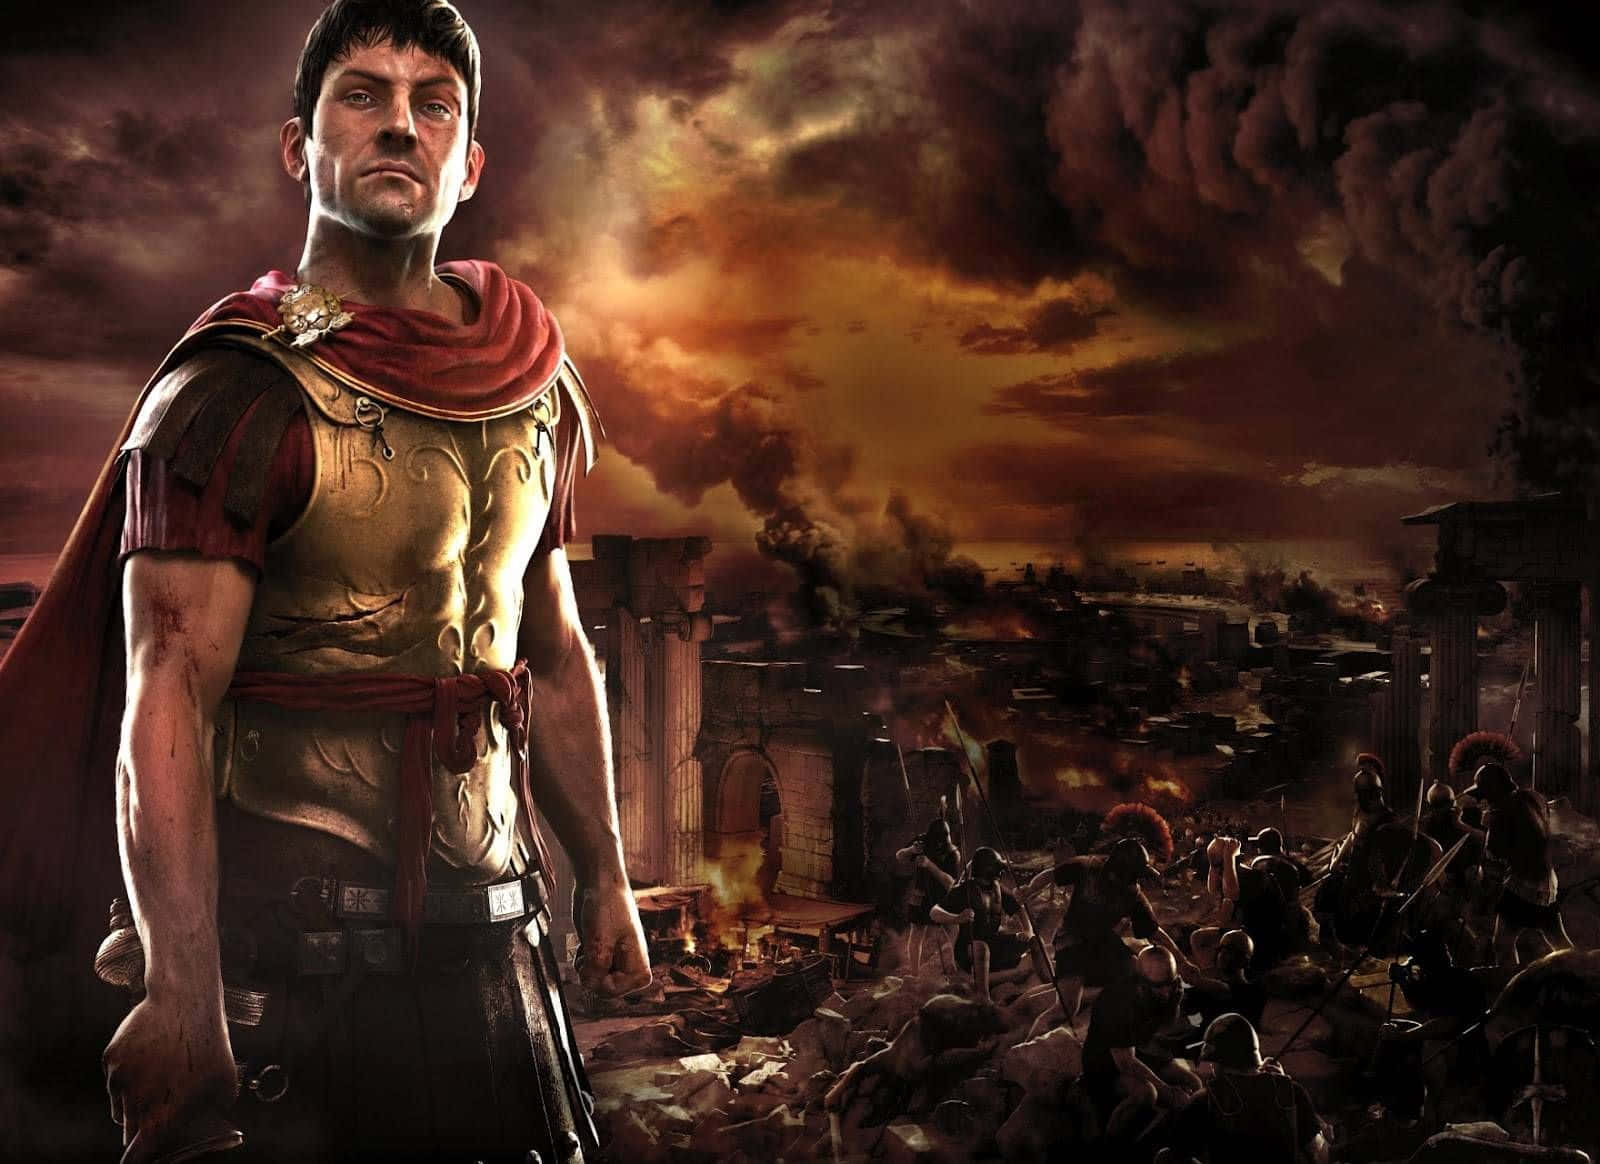 Erlebedie Aufregende Macht, Eine Römische Armee Im Epischen Strategiespiel Best Total War Rome 2 Zu Befehligen.